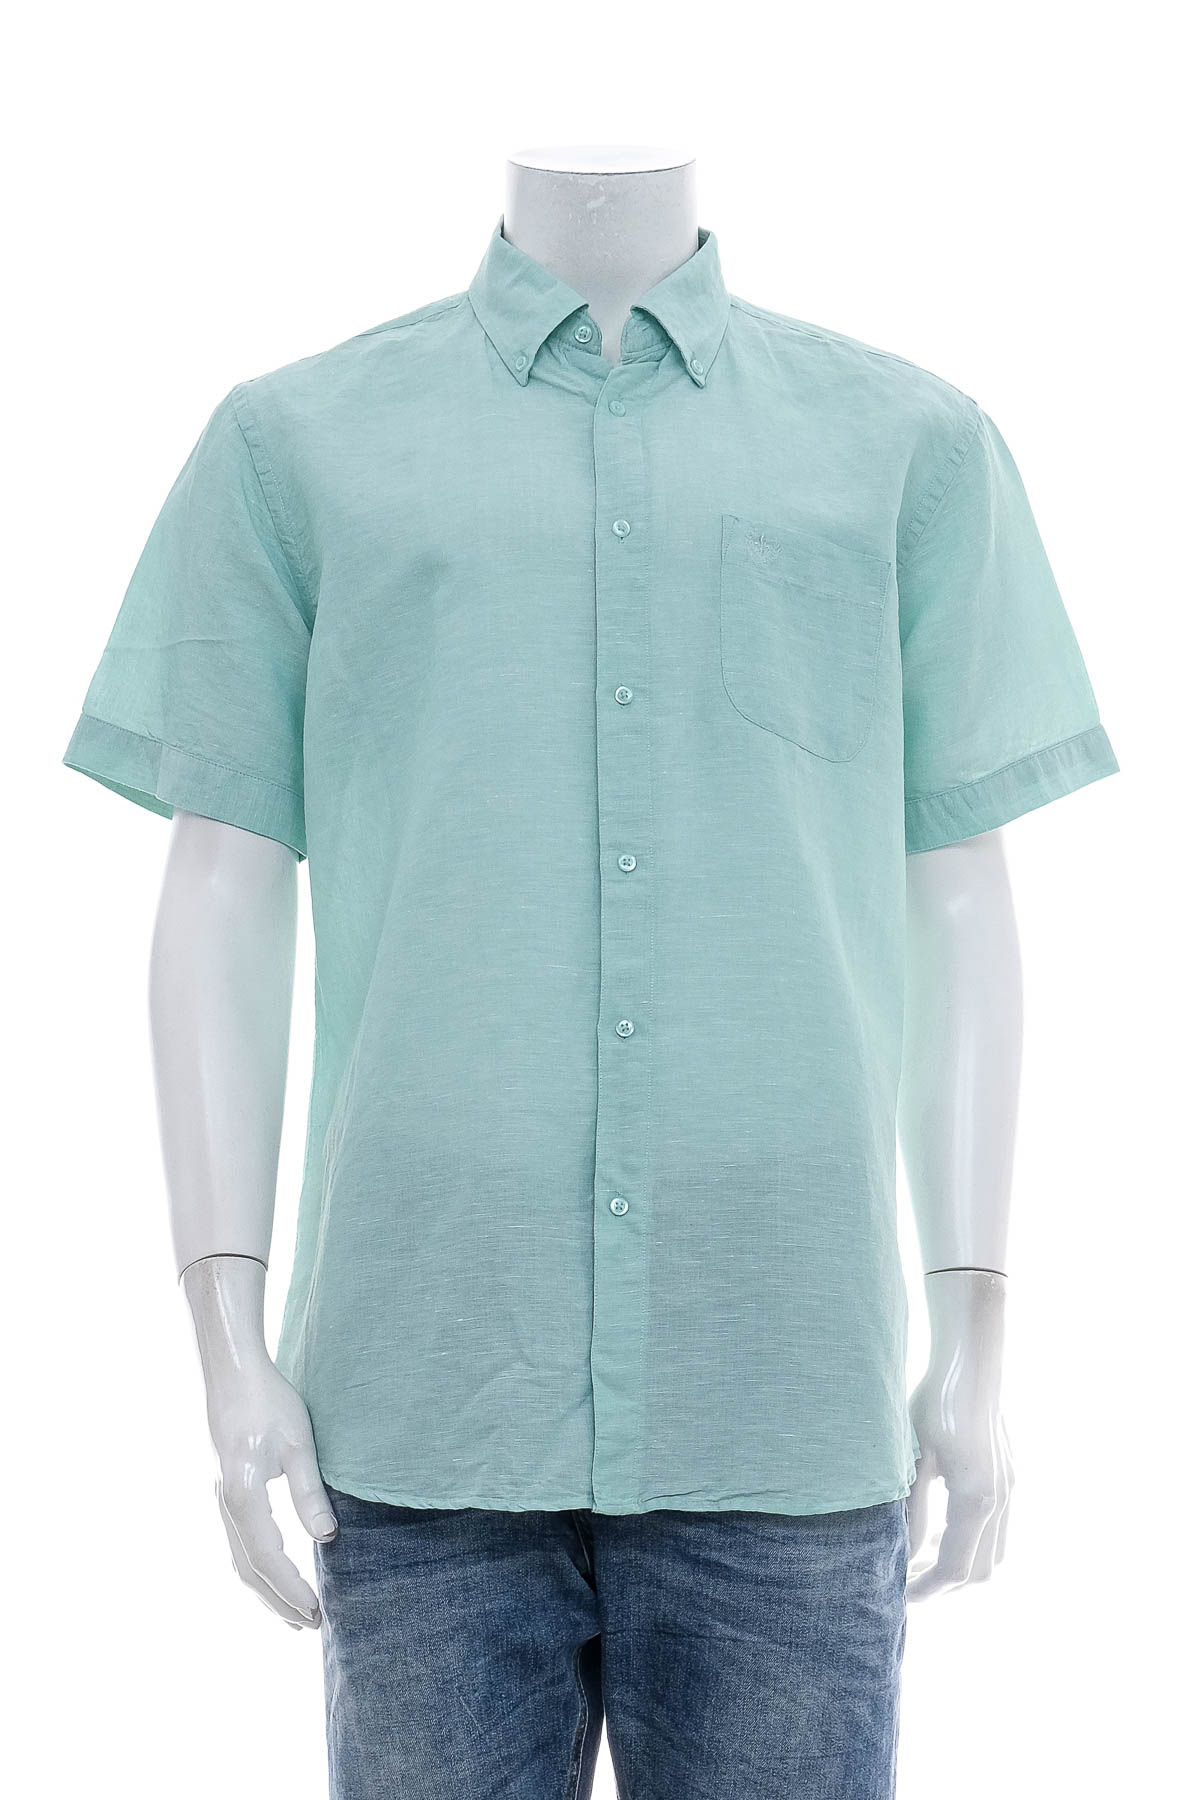 Ανδρικό πουκάμισο - FRANCO BETTONI - 0